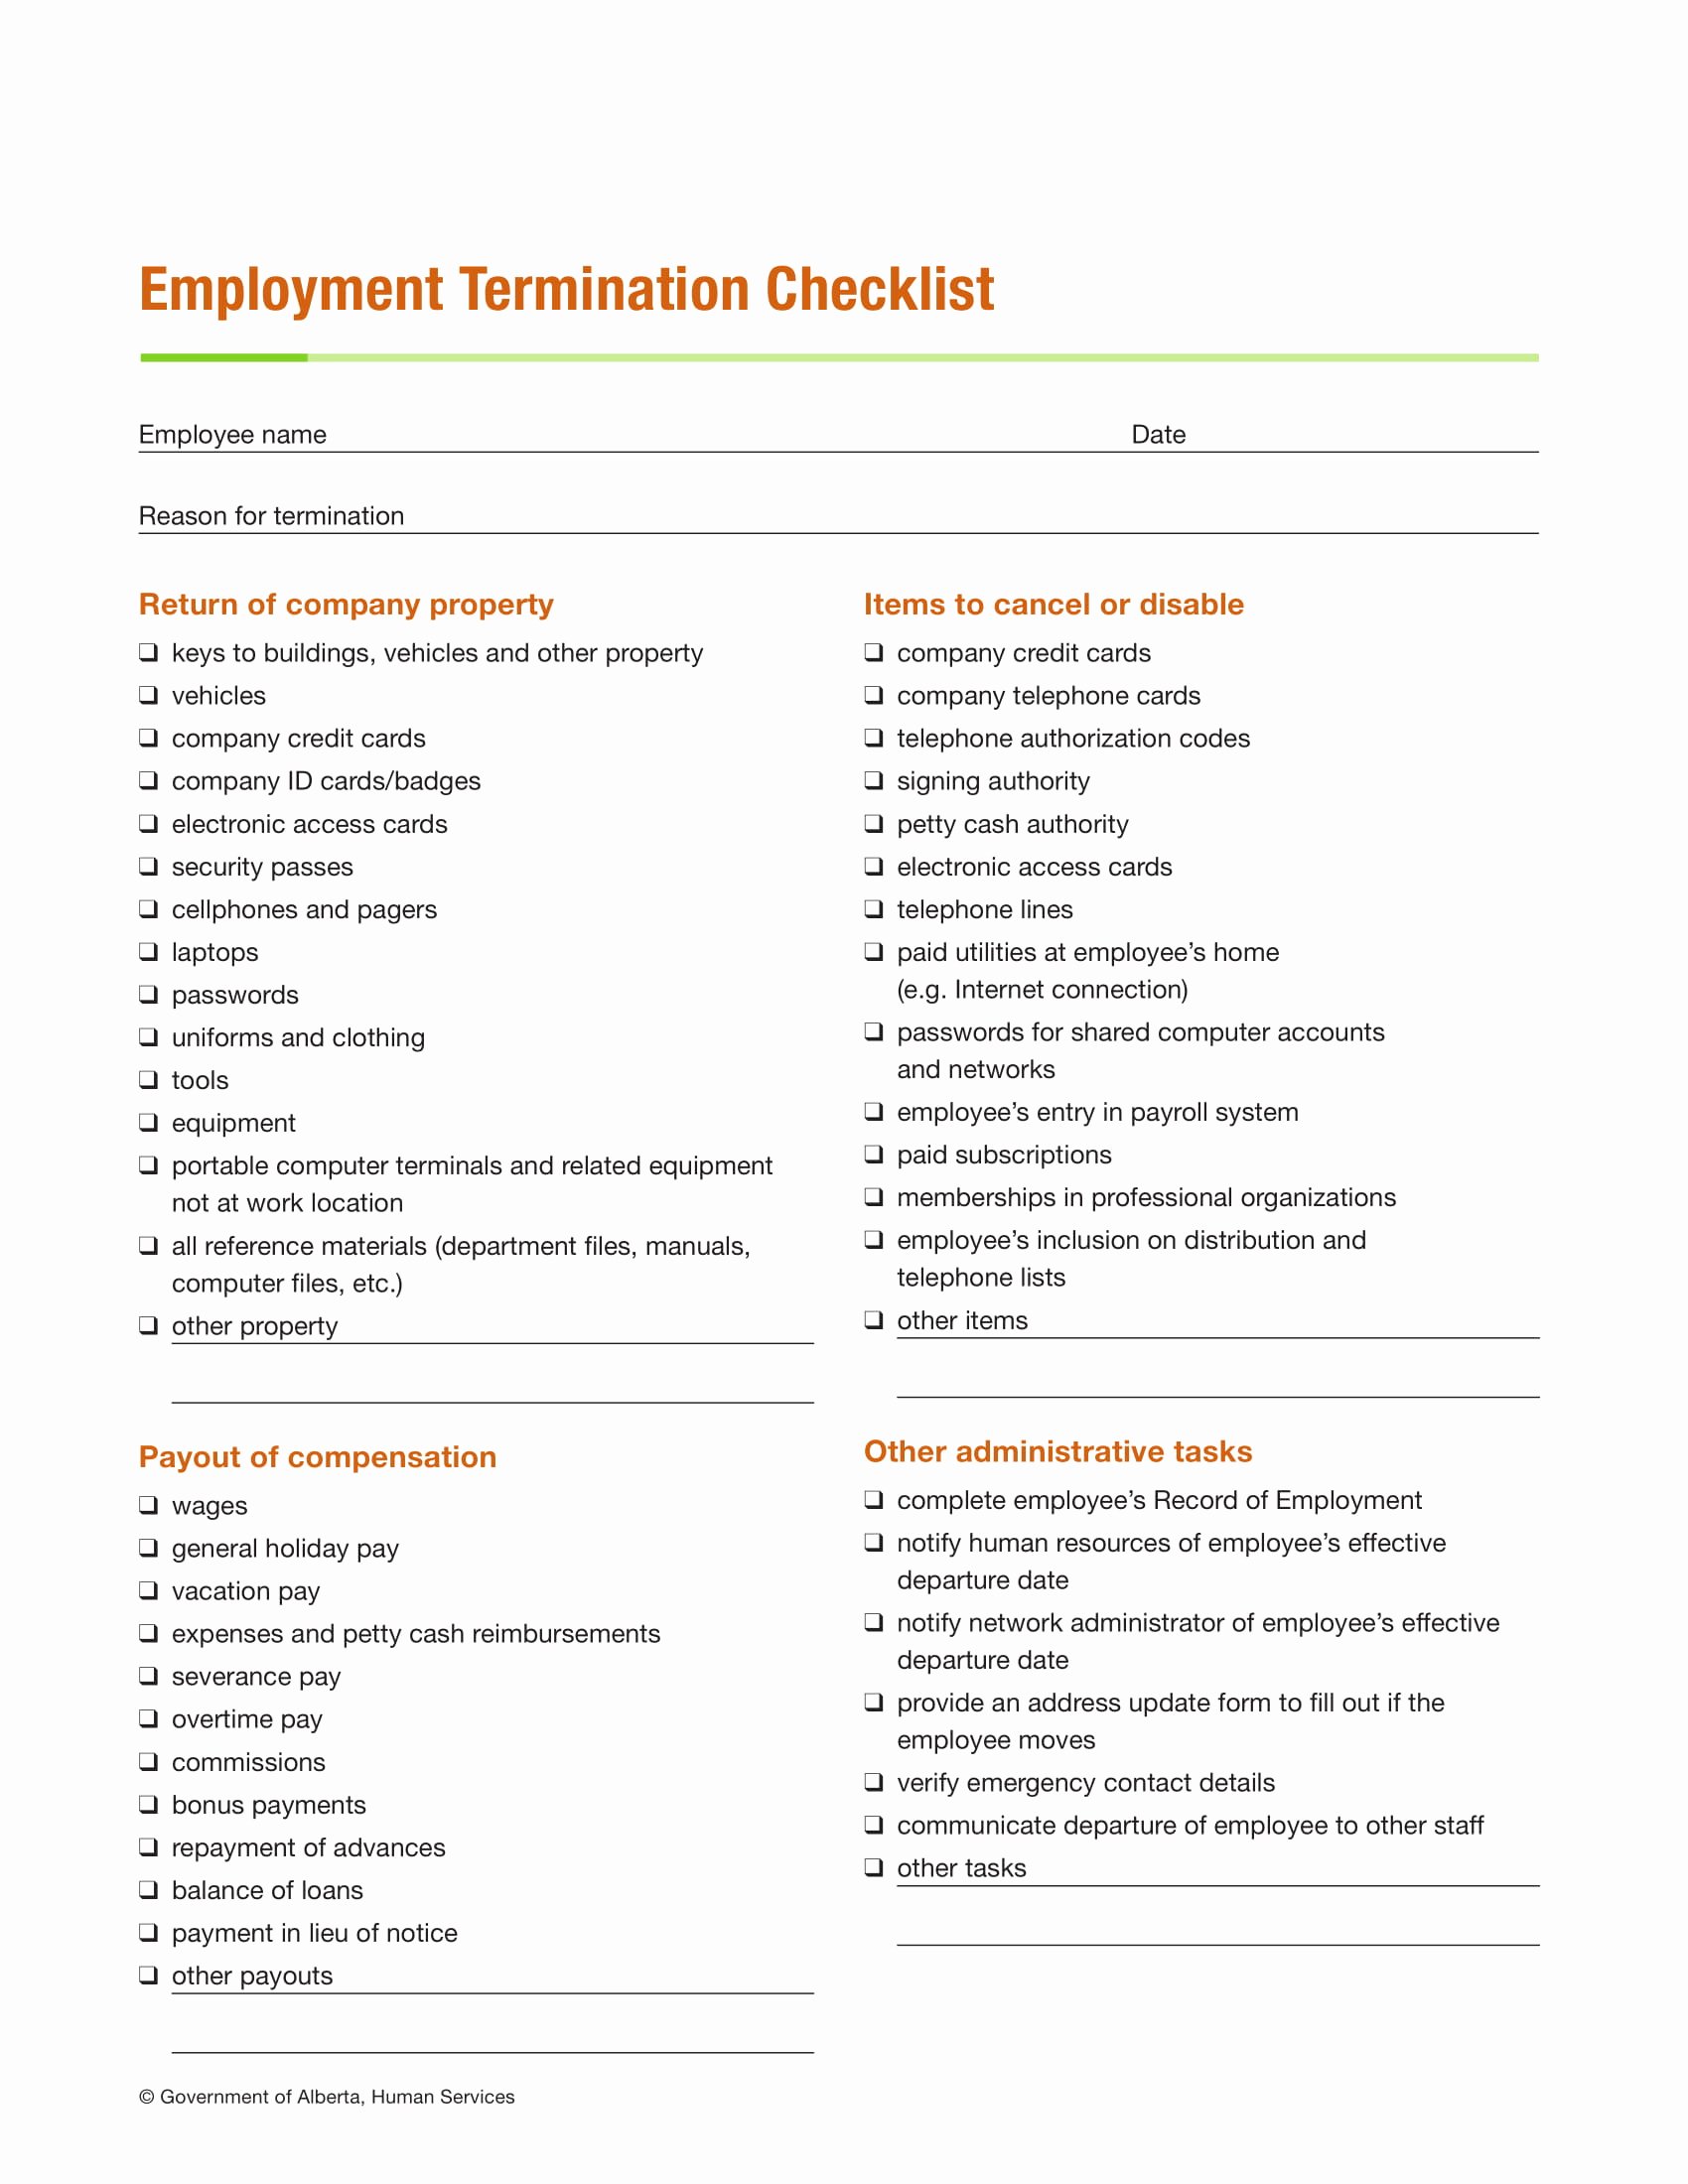 Employment Termination Checklist Template Awesome 9 Termination Checklist Examples Pdf